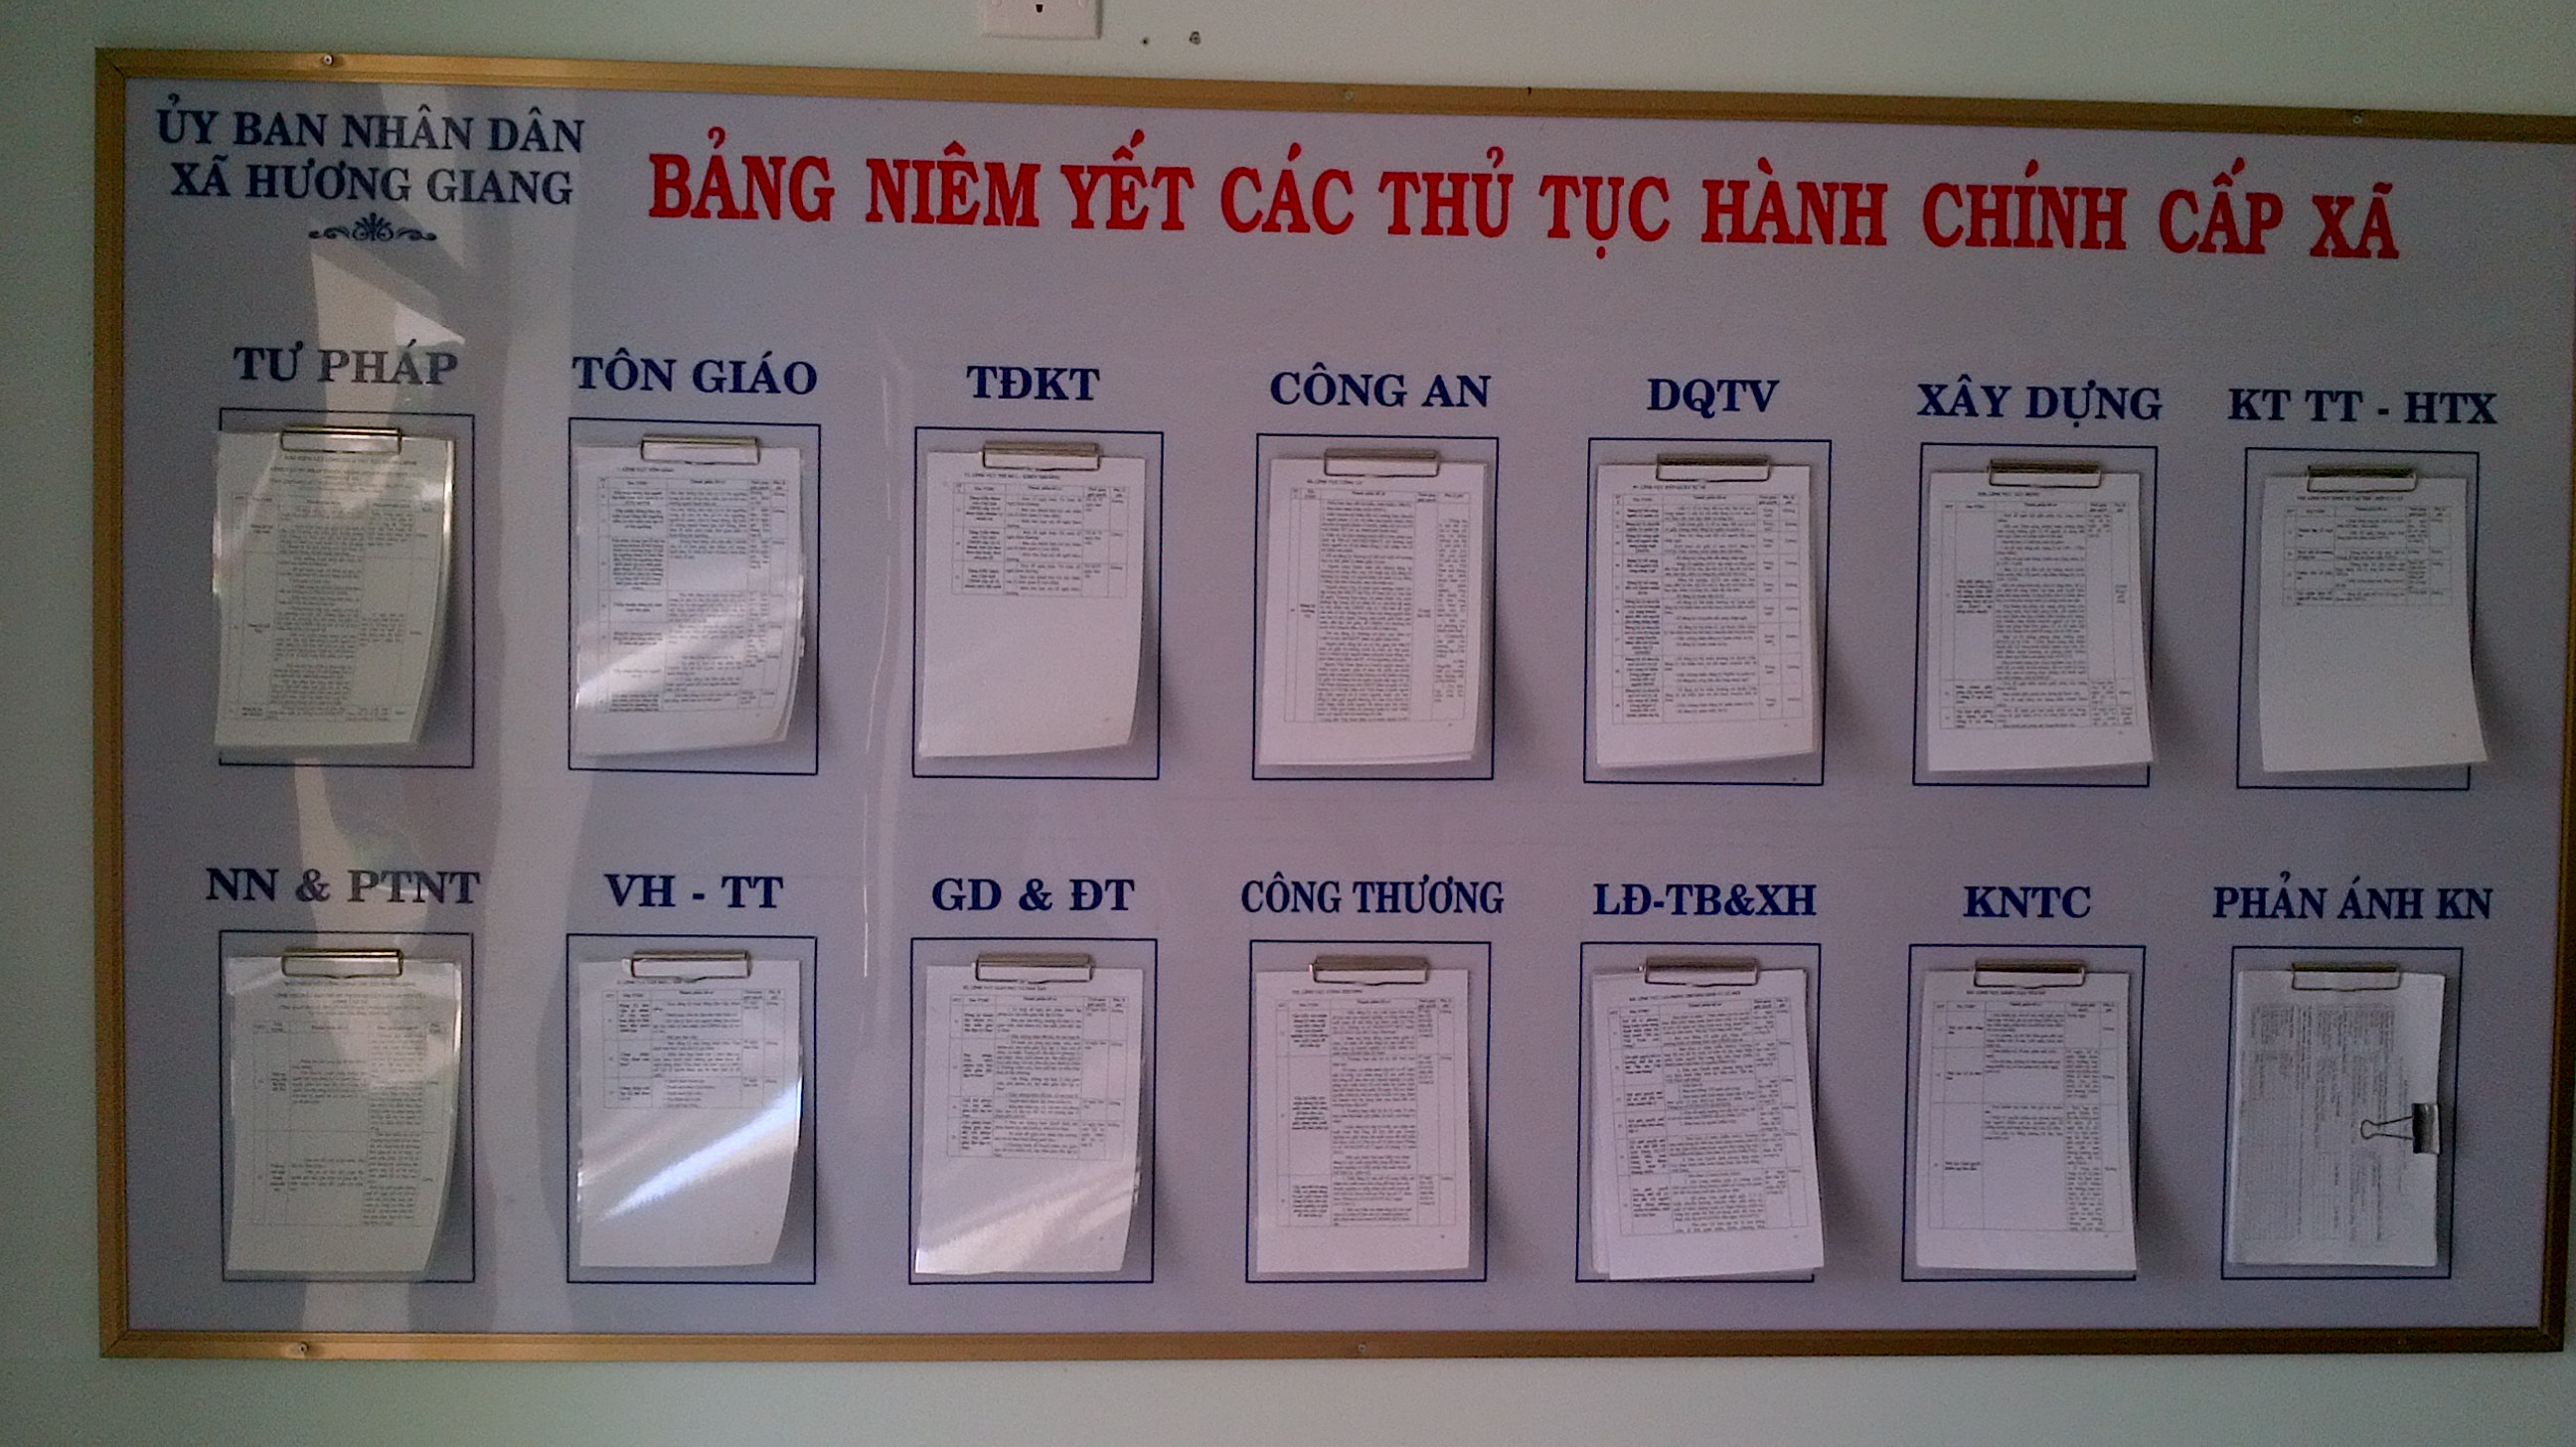 Bảng niêm yết các TTHC tại UBND xã Hương Giang